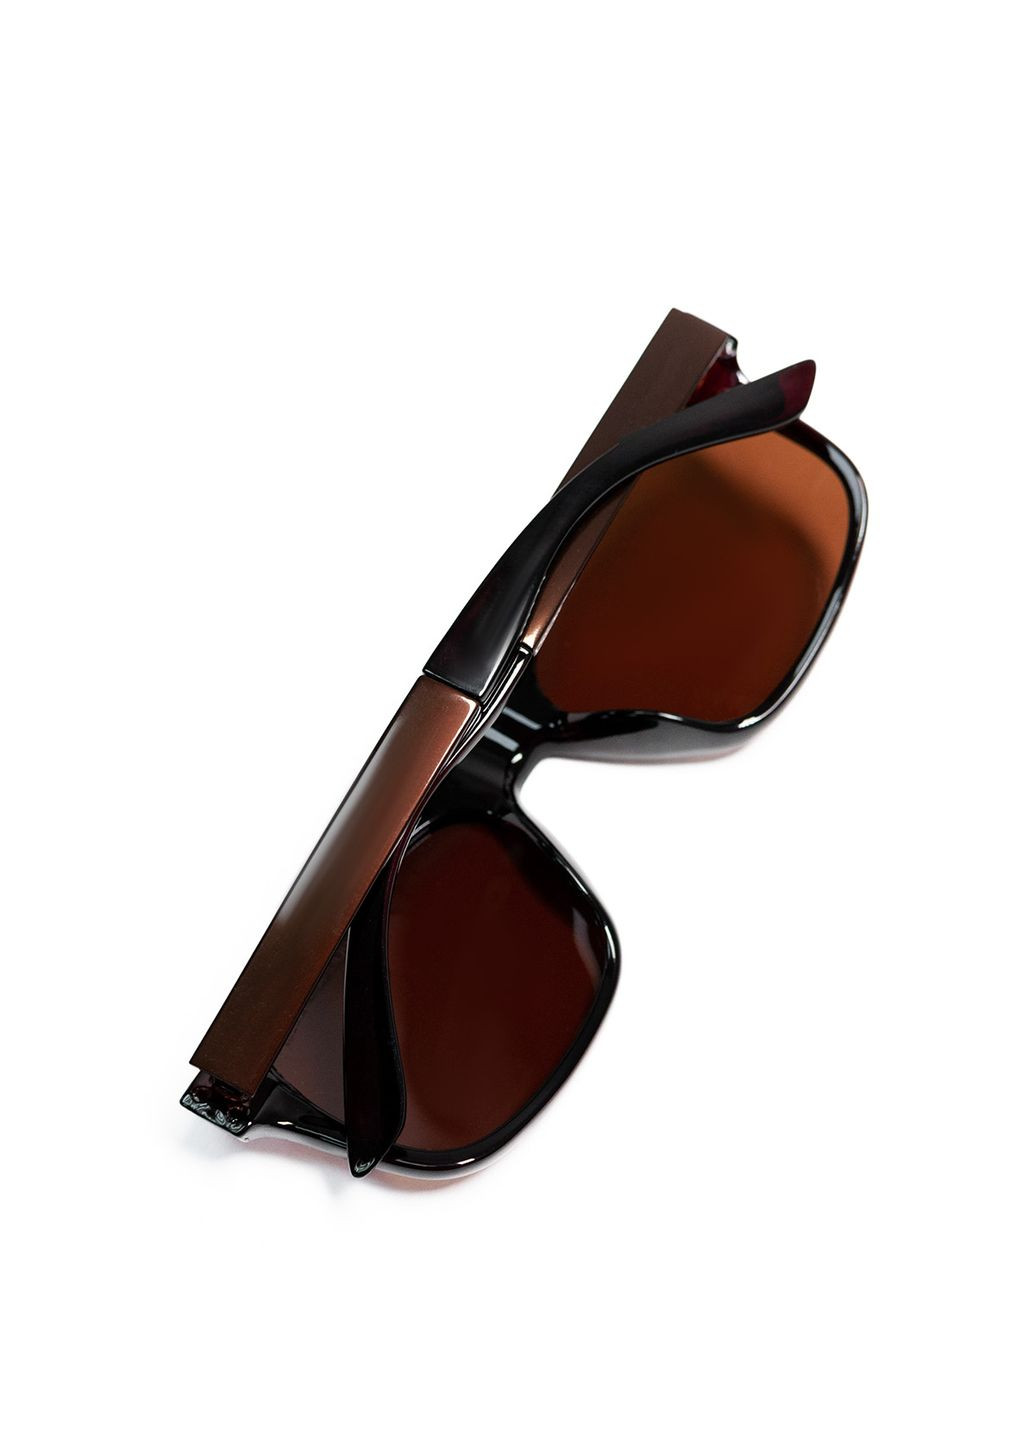 Солнцезащитные очки Magnet go1-99 (290841896)